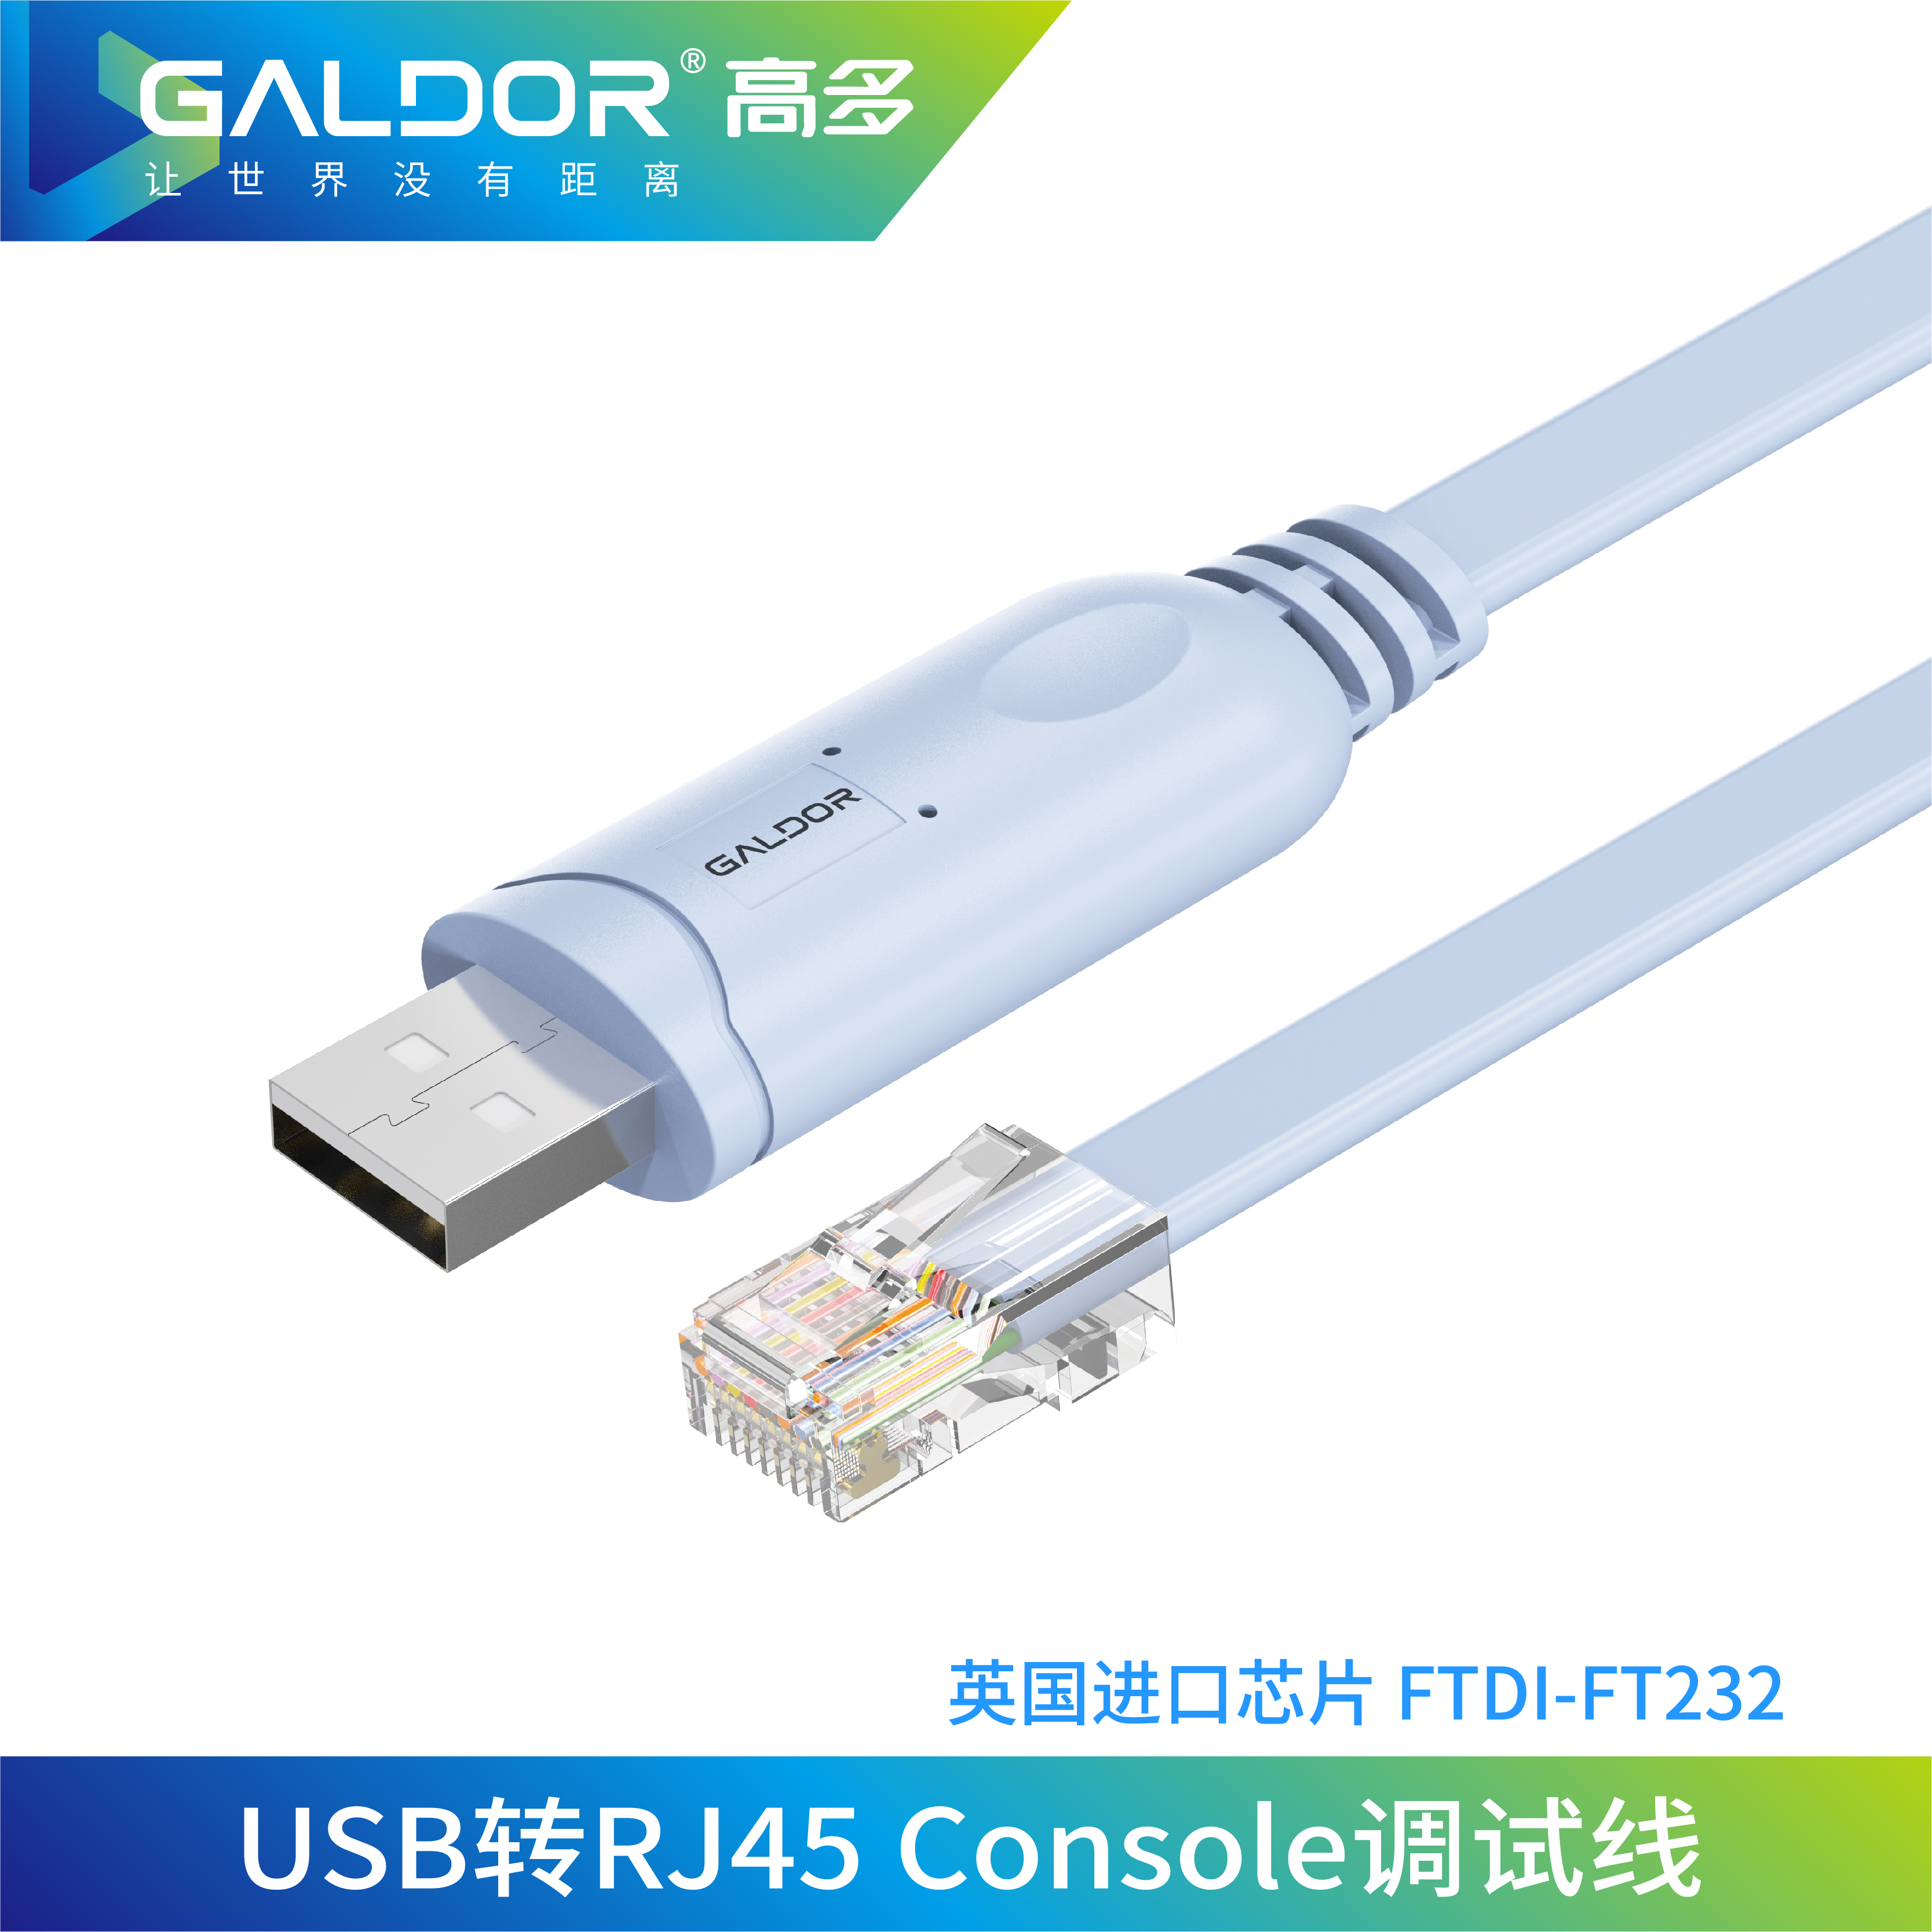 USB 转 RJ45 Console   调试线